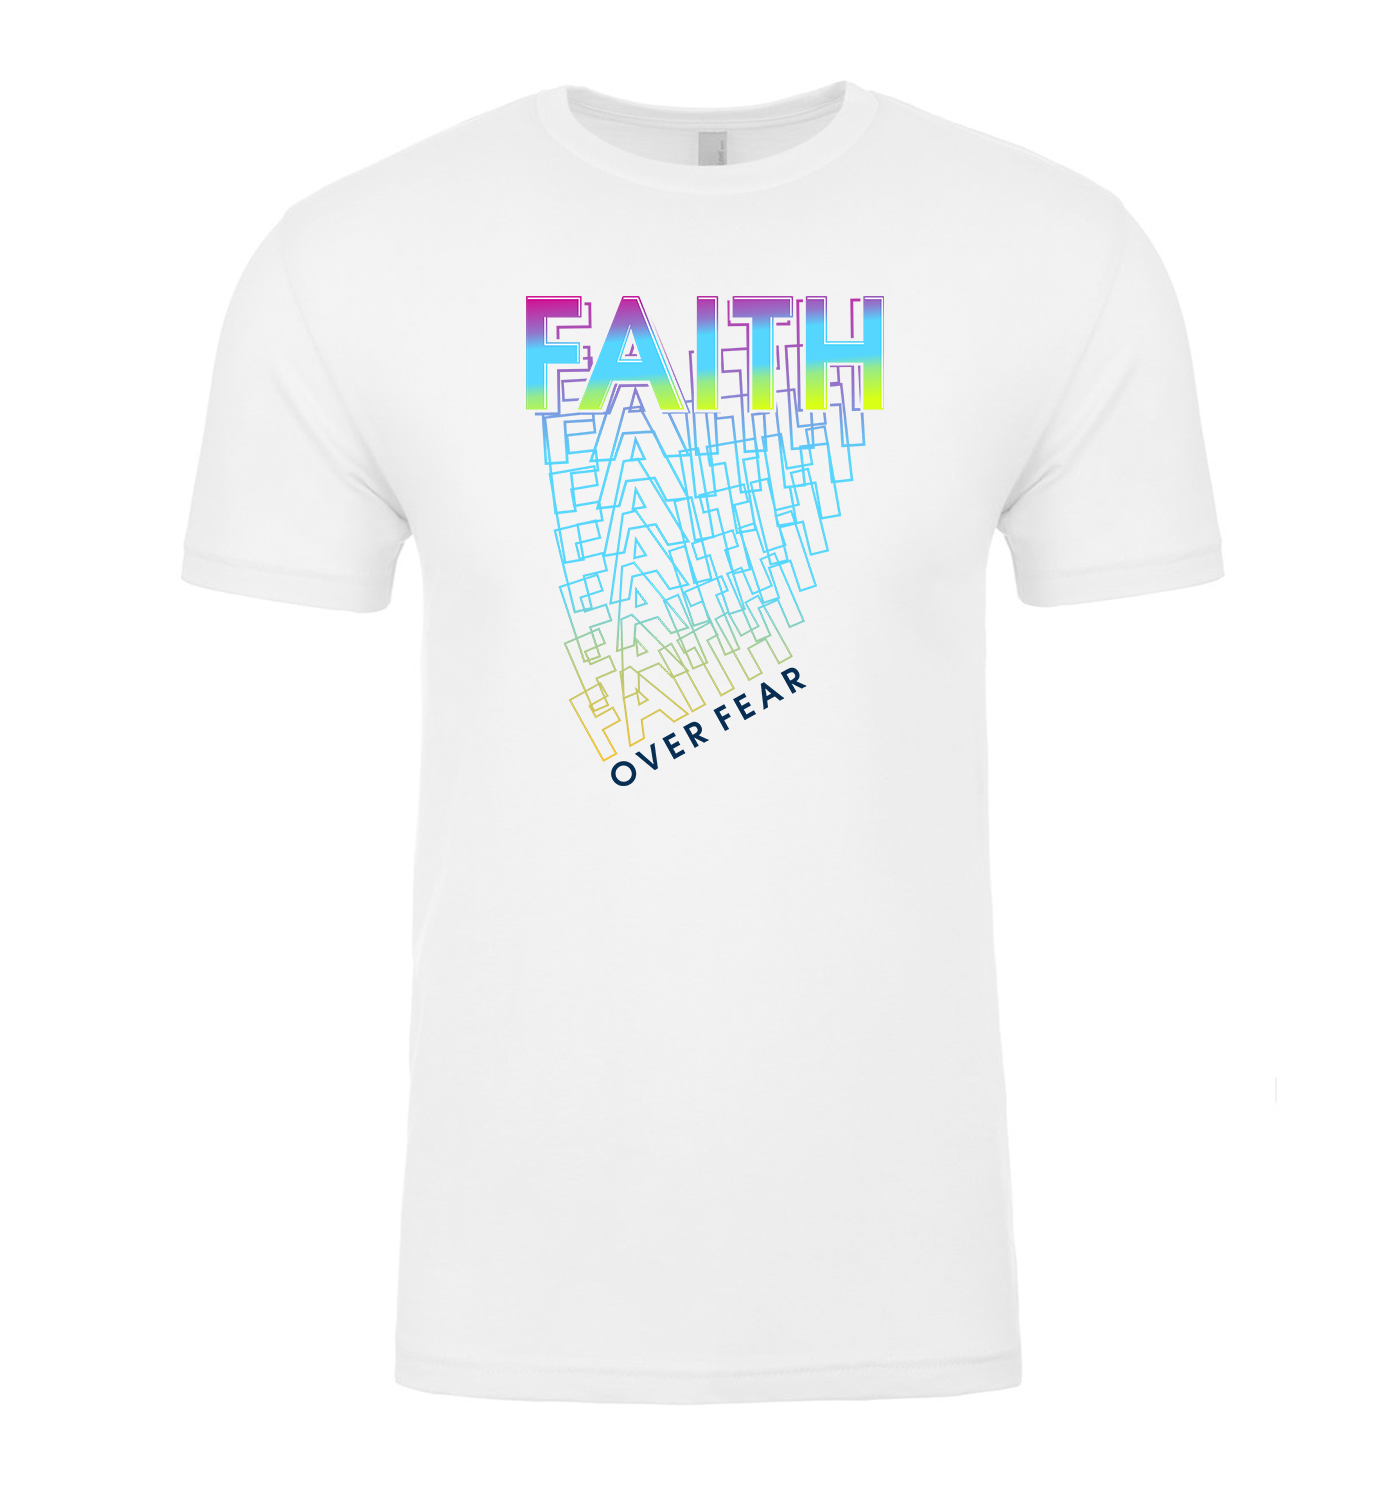 Faith Over Fear Short-Sleeved T-Shirt